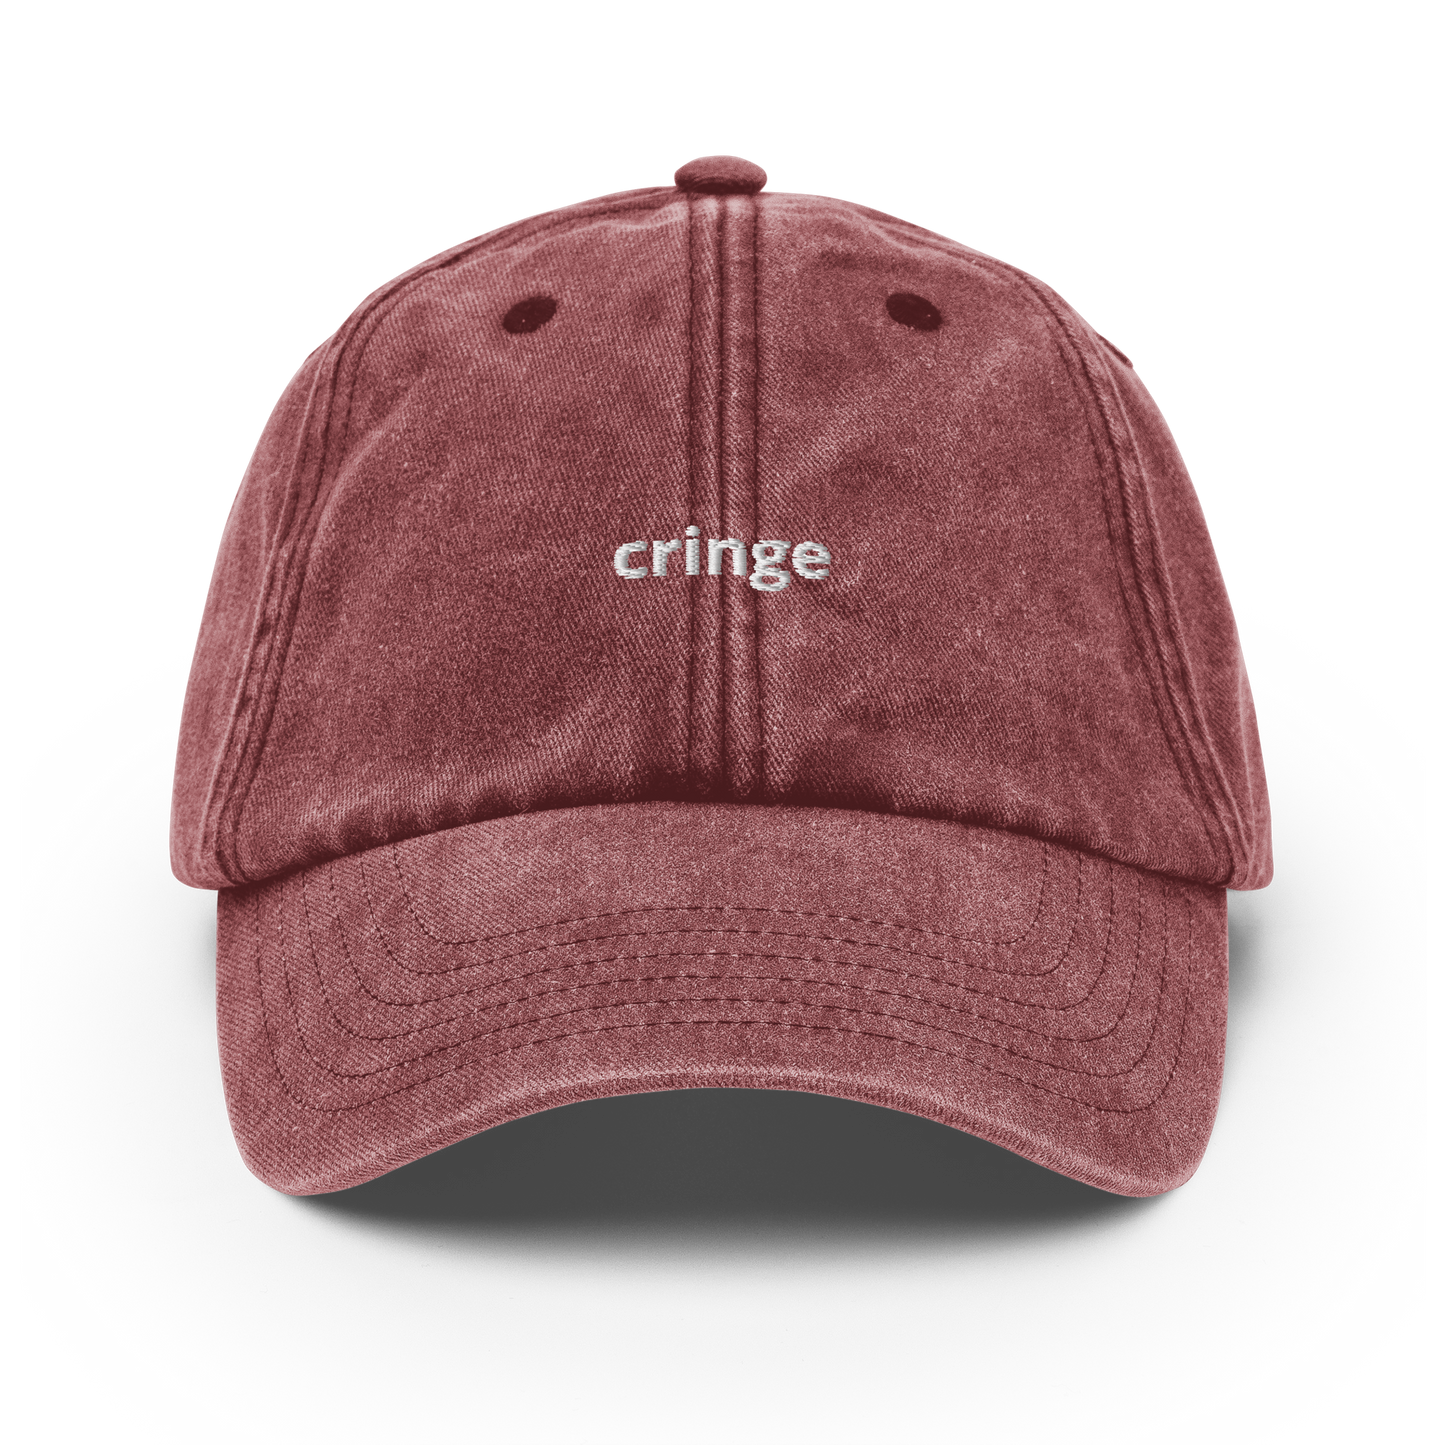 Cringe - Vintage Hat